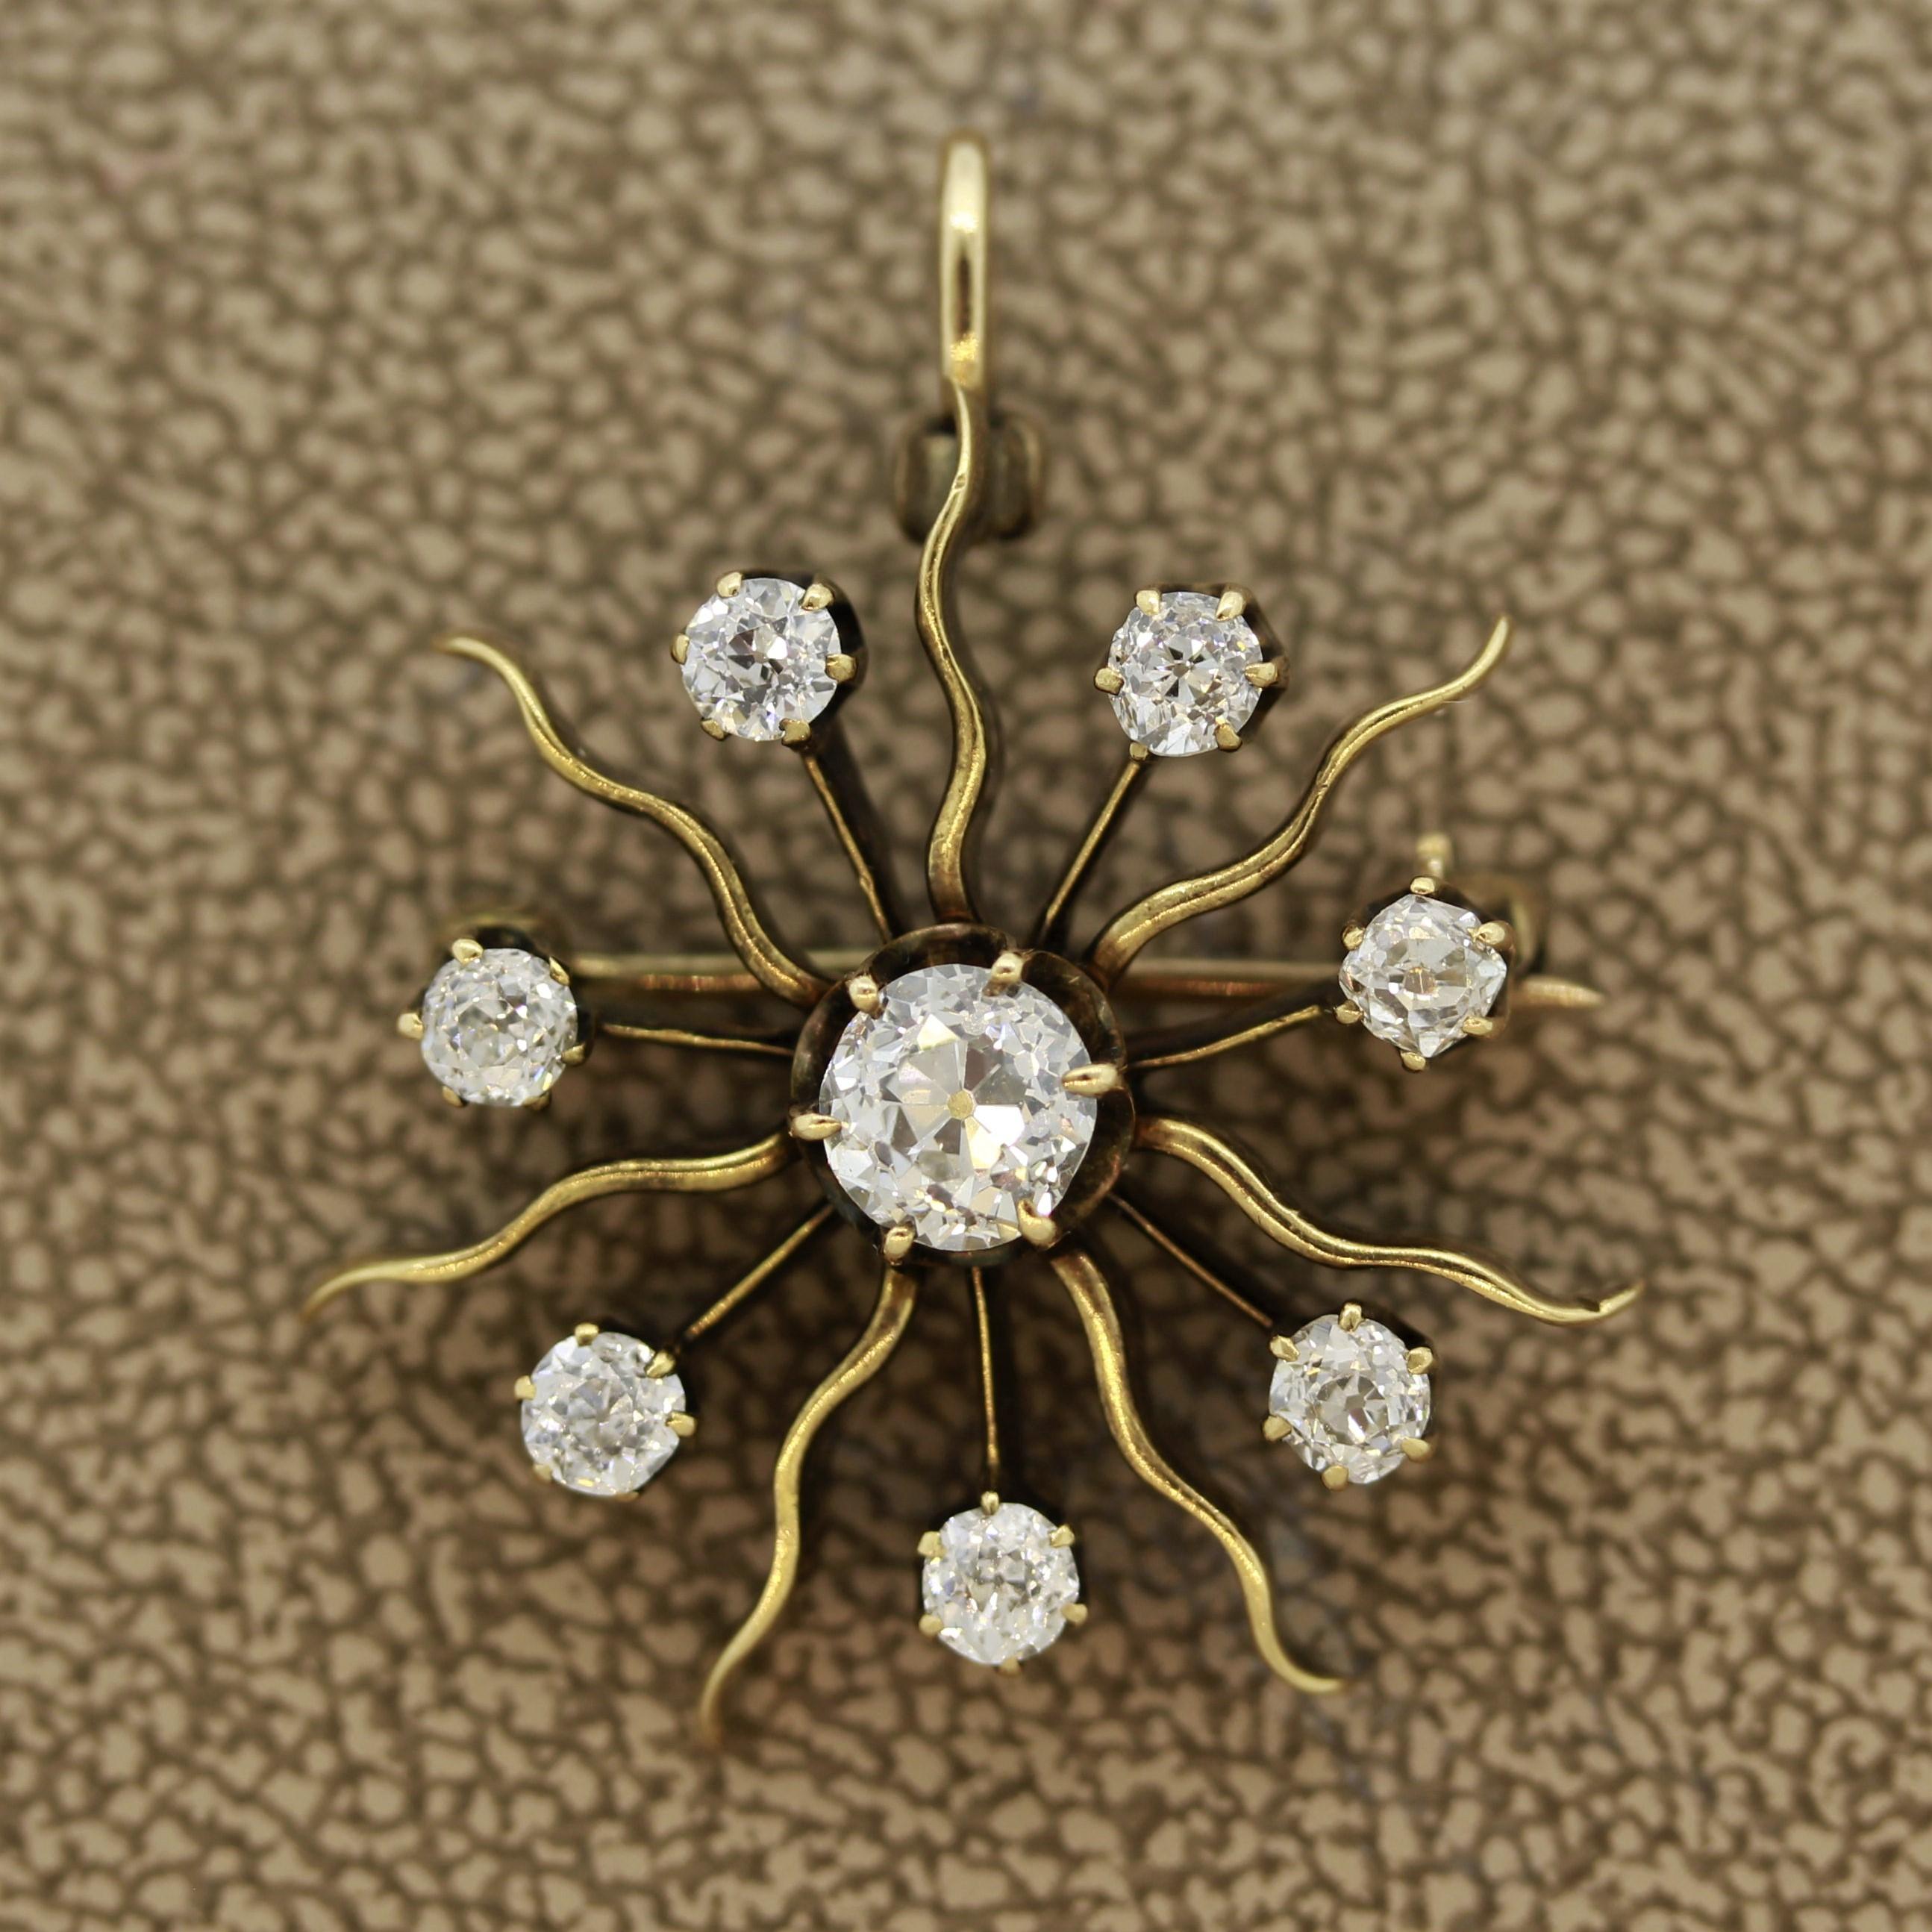 Pièce de bonne facture datant des années 1880, cette épingle victorienne antique représente un soleil éclatant. Il comporte un grand diamant de taille ancienne au centre, entouré de sept diamants plus petits. Au total, elles pèsent 1,03 carats et